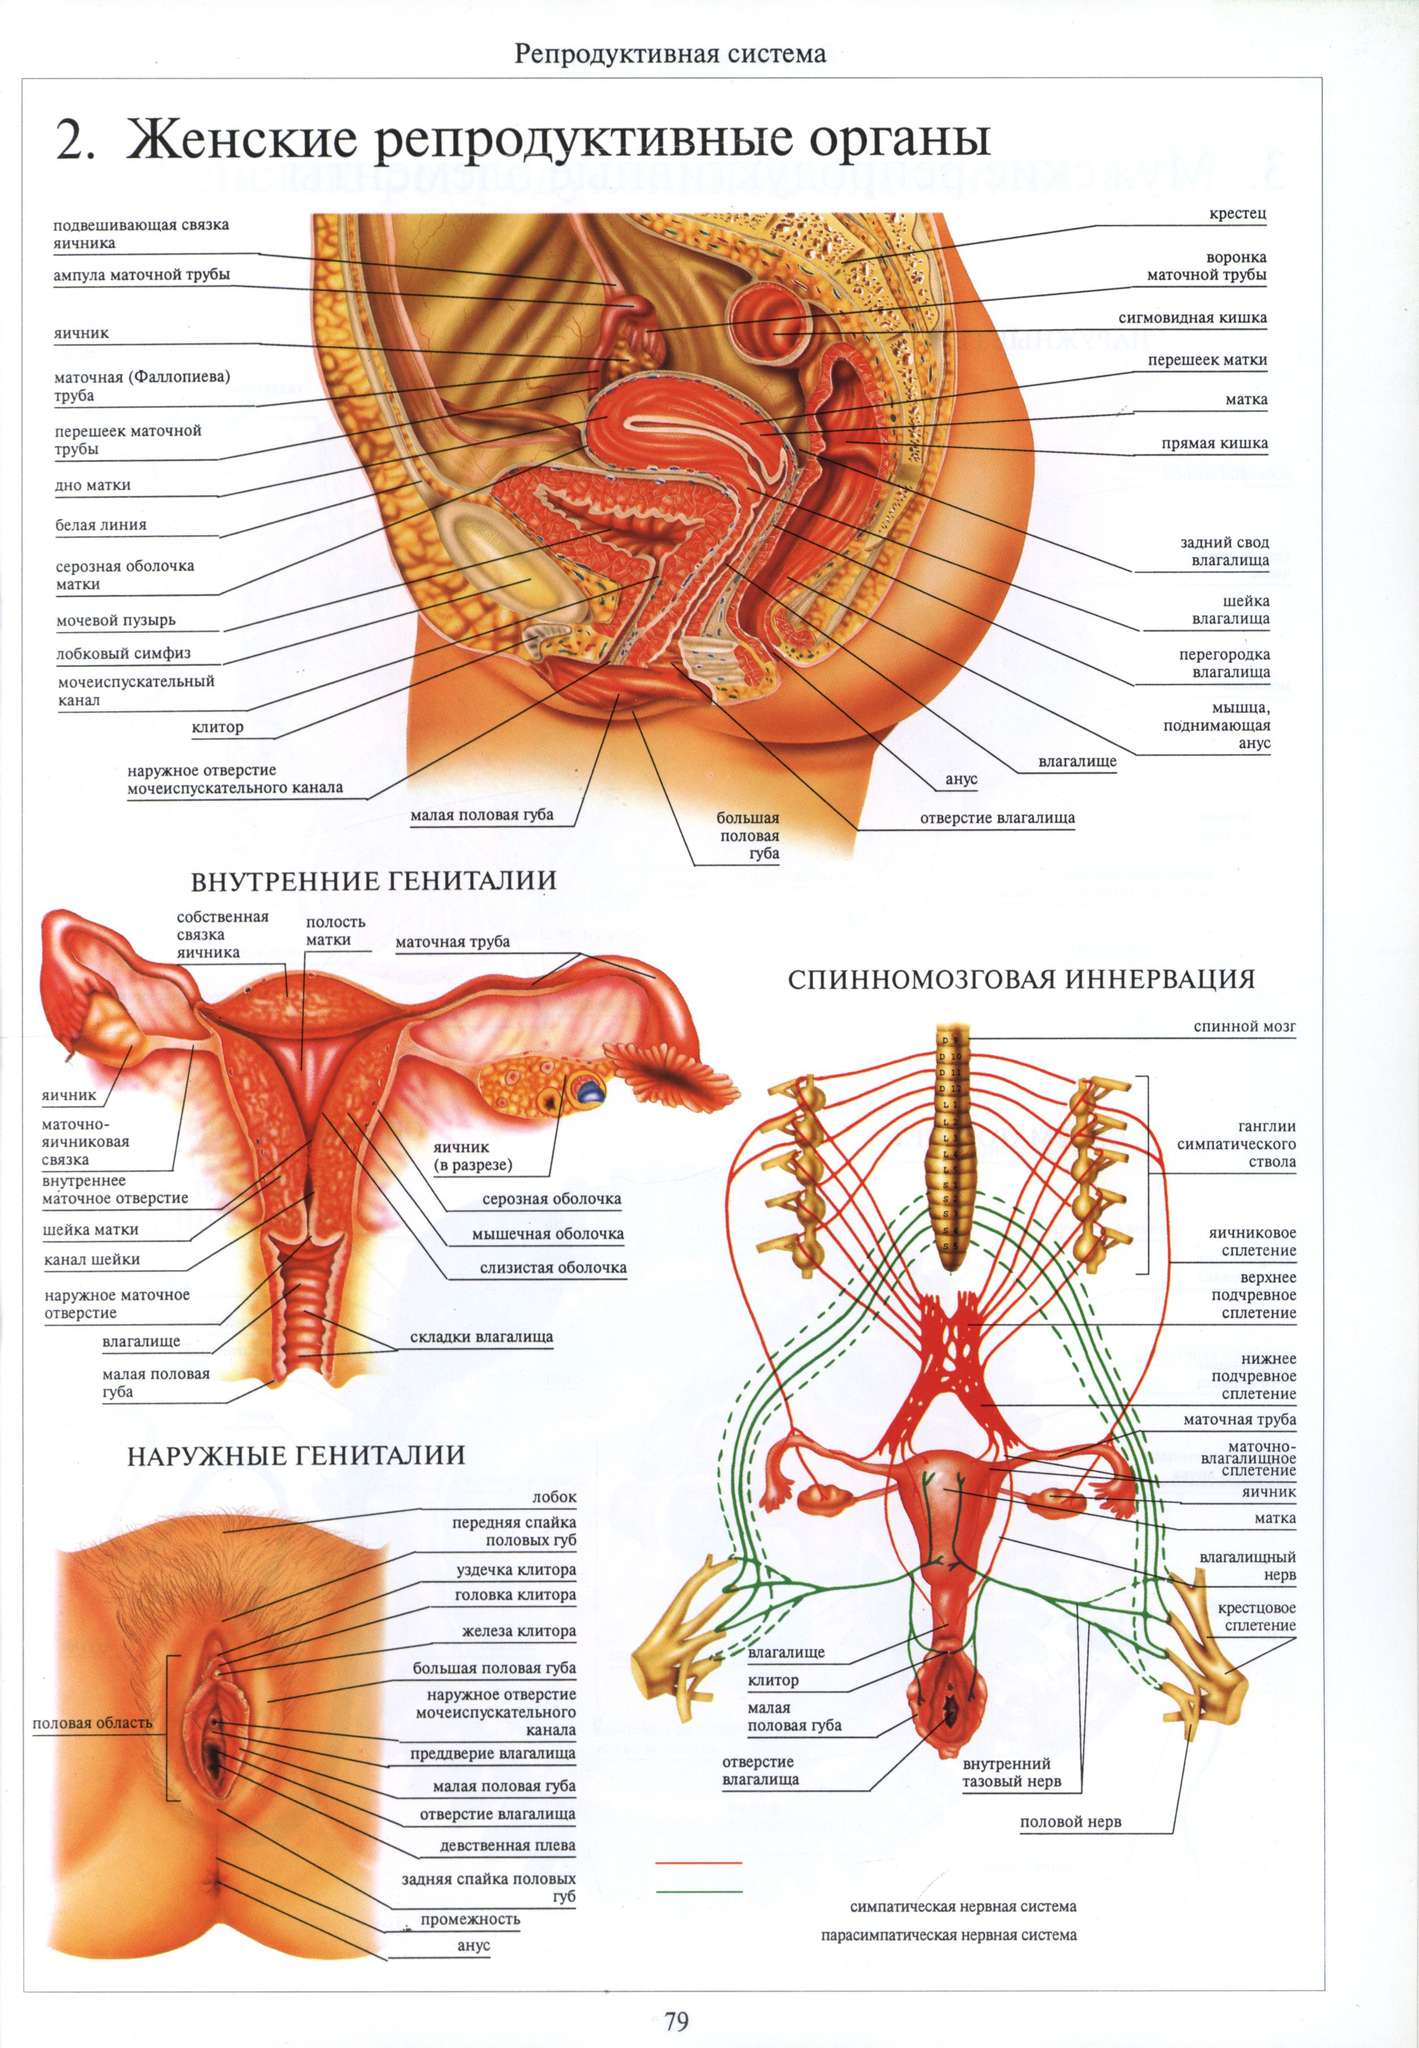 мочеполовая система женщины строение и функции фото